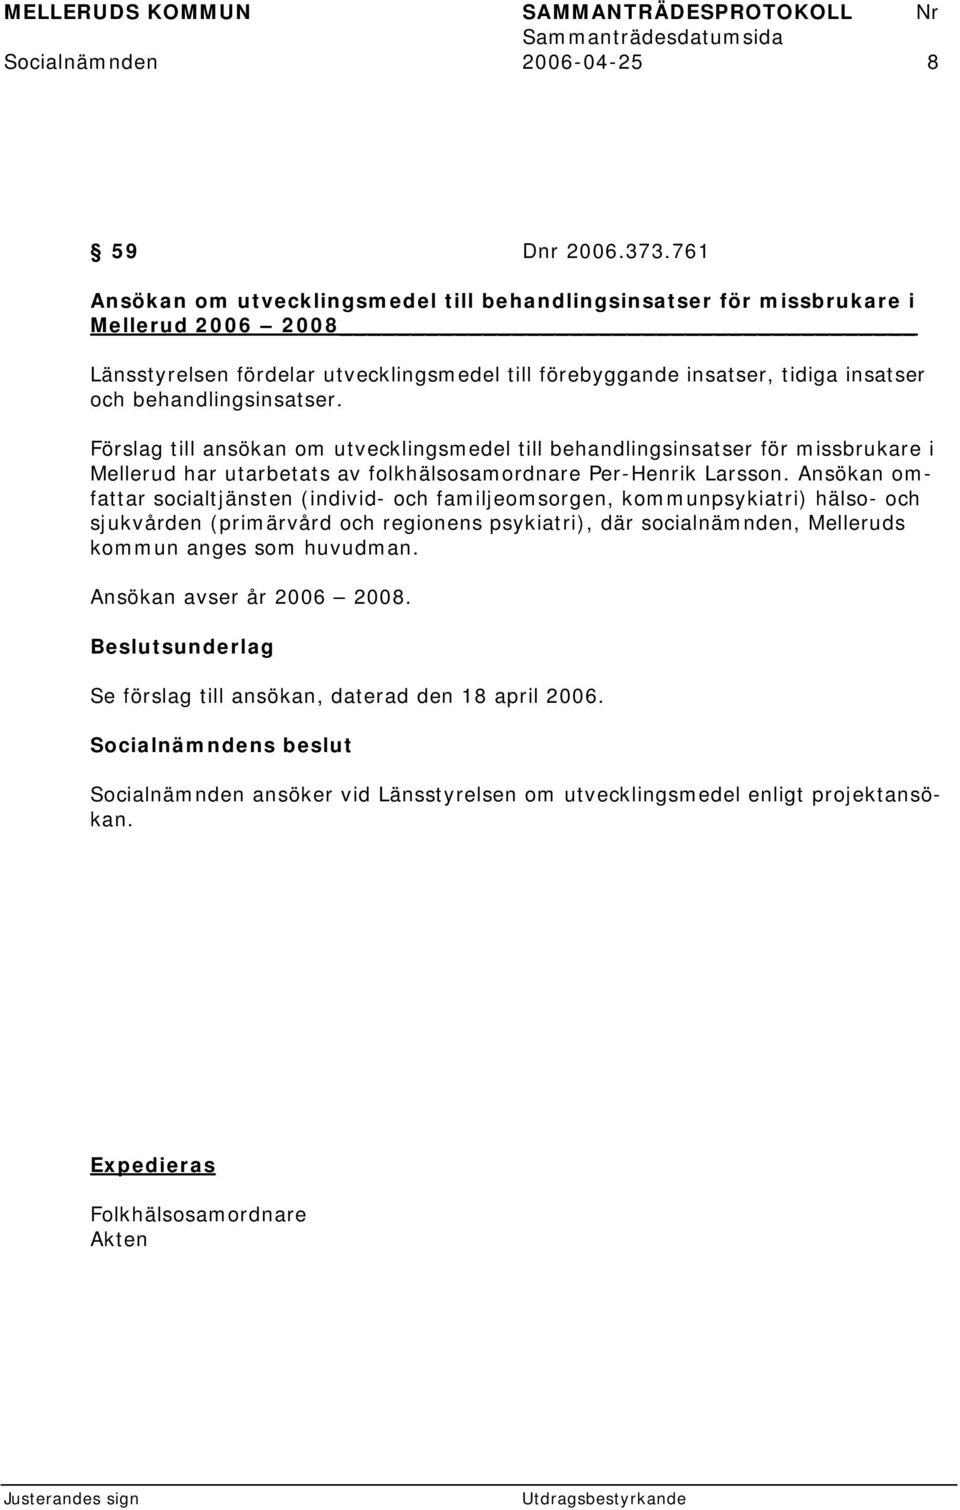 behandlingsinsatser. Förslag till ansökan om utvecklingsmedel till behandlingsinsatser för missbrukare i Mellerud har utarbetats av folkhälsosamordnare Per-Henrik Larsson.